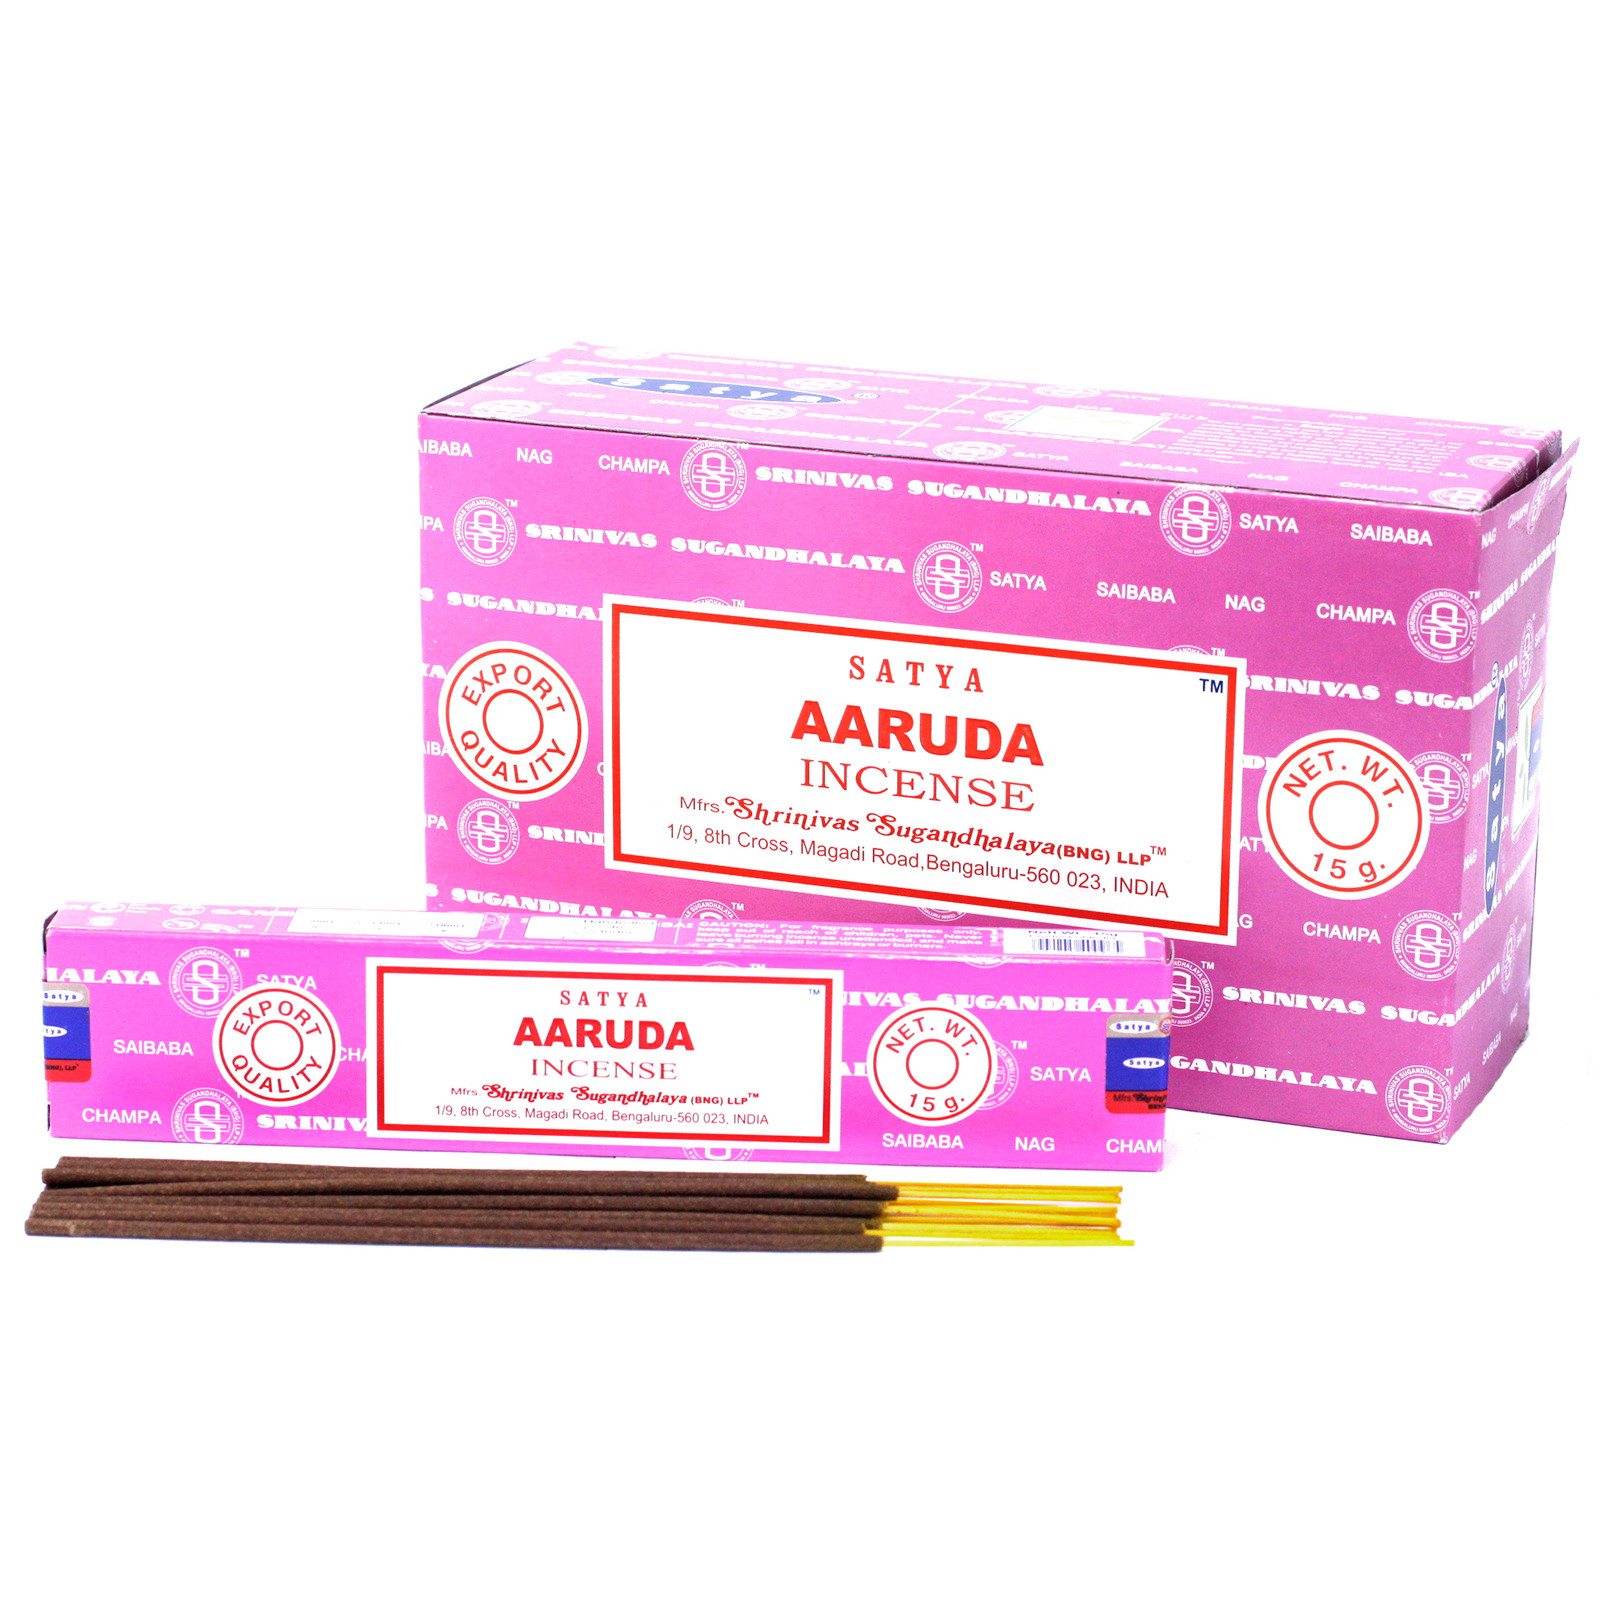 3 x 15g Packs Satya Incense Sticks - Aaruda